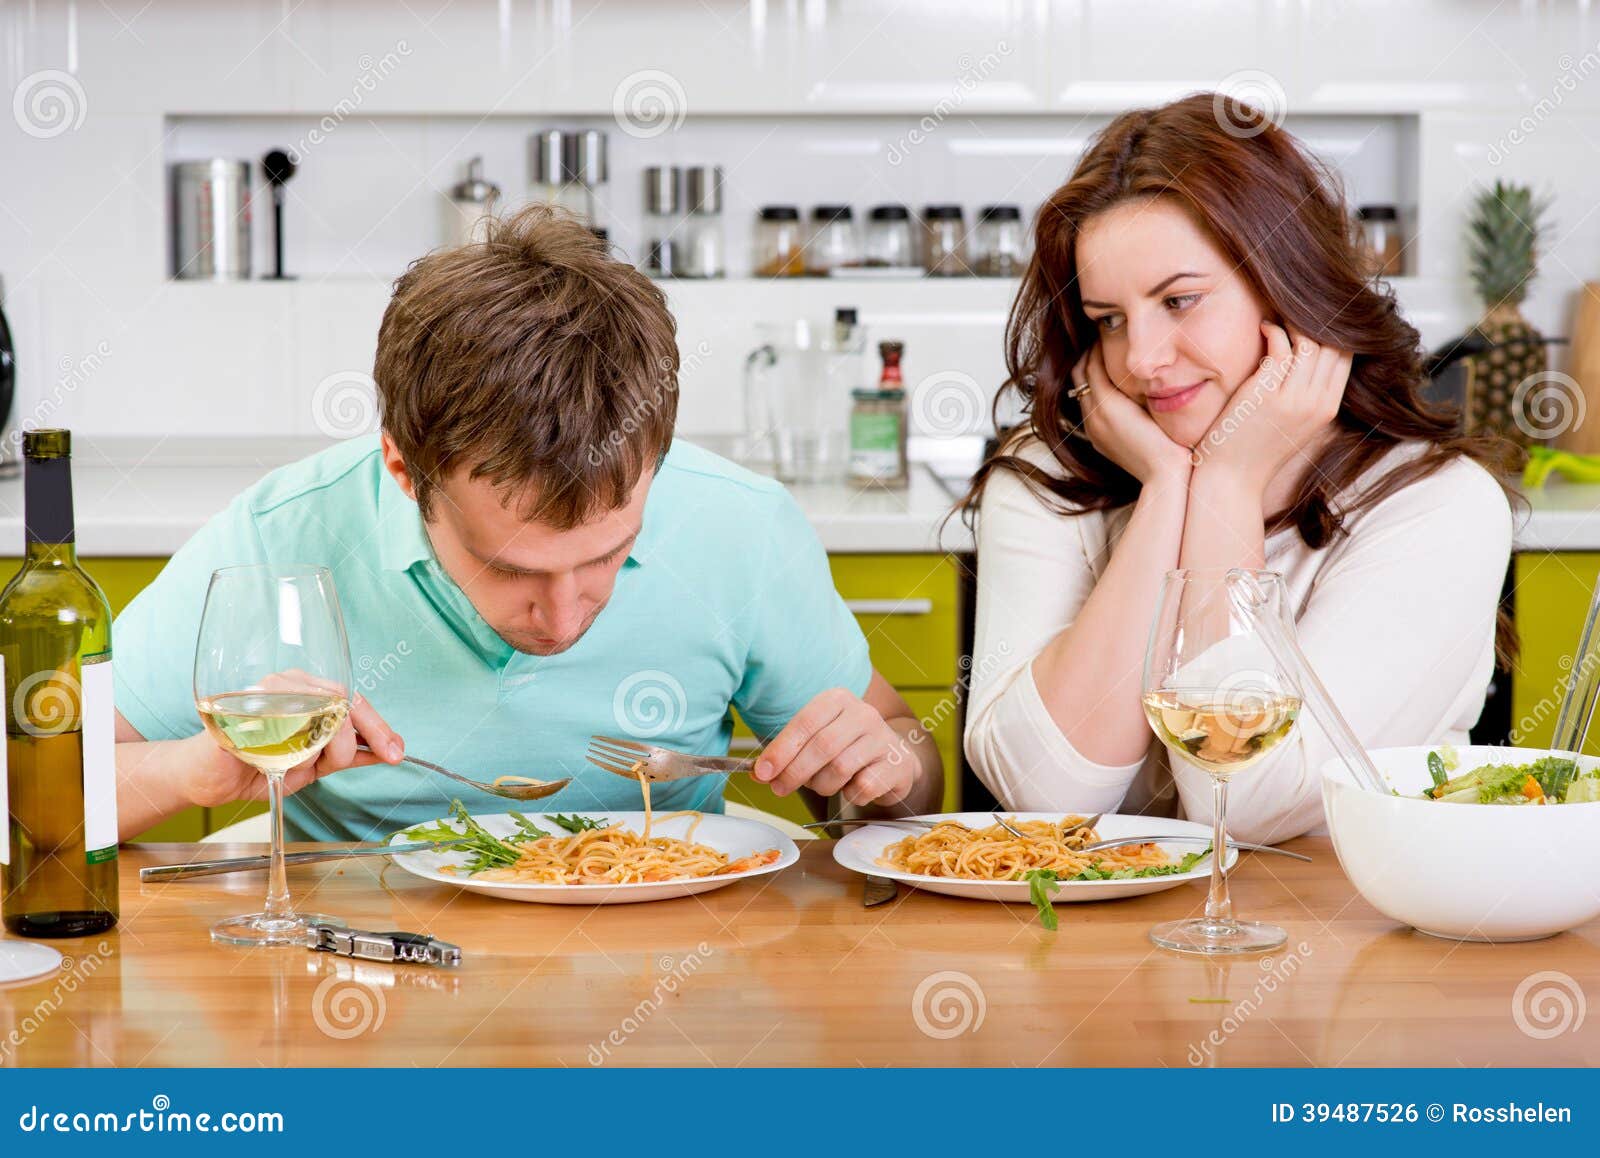 Муж был в гостях у бывшей. Мужчина и женщина ужинают. Мужчина и женщина завтракают. Супруги за столом. Муж ужинает на кухне.